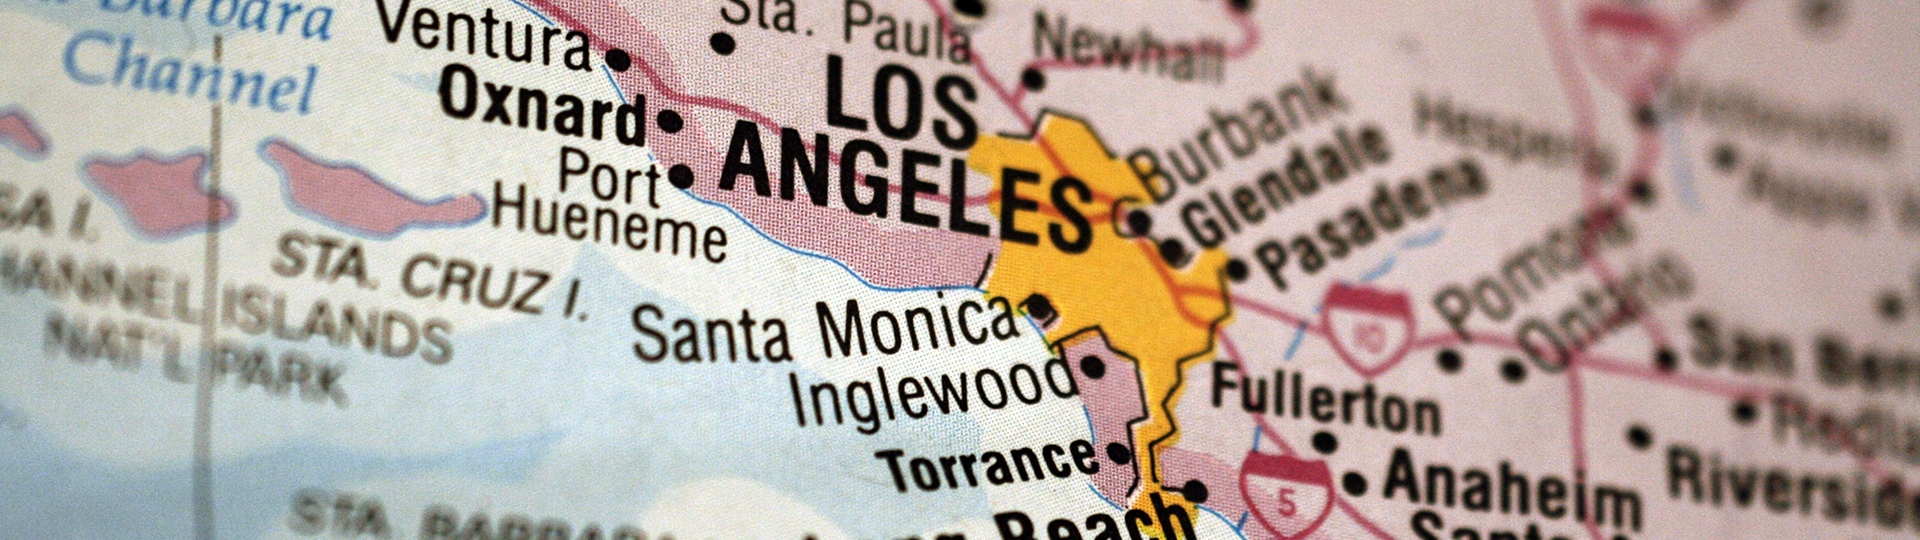 横幅图案：洛杉矶县近拍地图，突出显示洛杉矶及其周边城市。